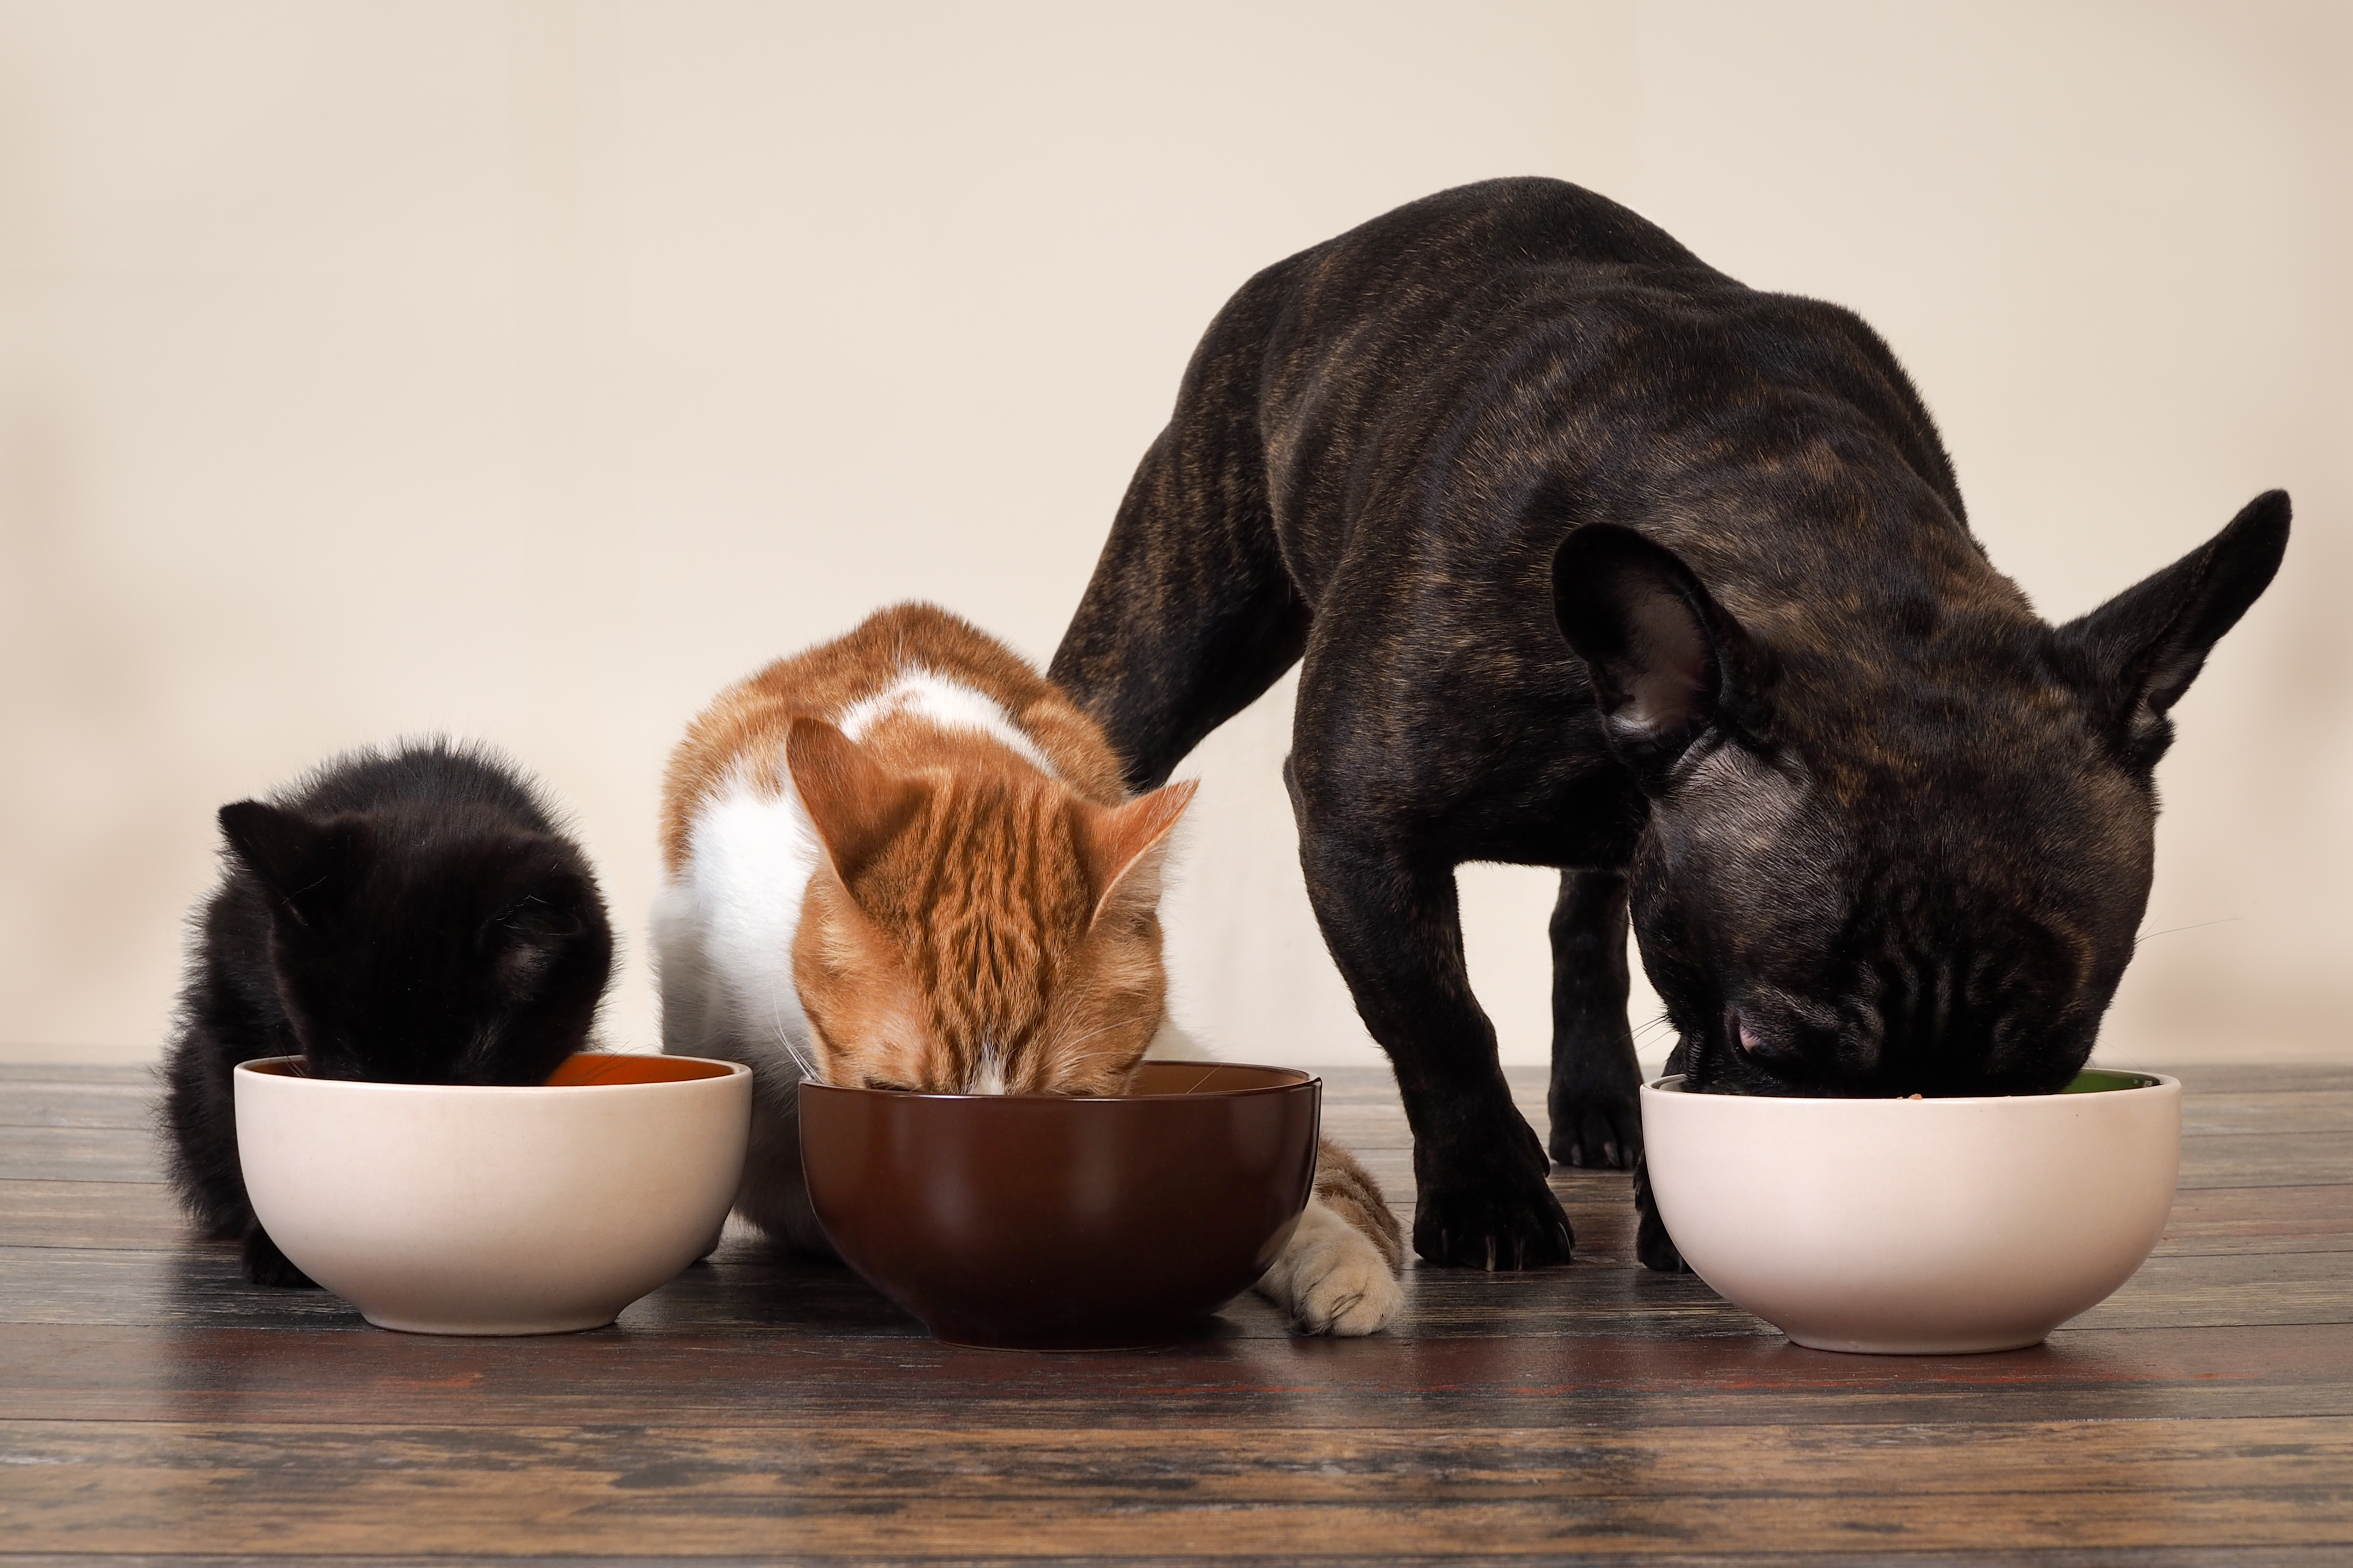 Домашние животные в многоквартирном доме. Кошки и собаки. Питание домашних животных. Еда для животных. Кормежка животных.